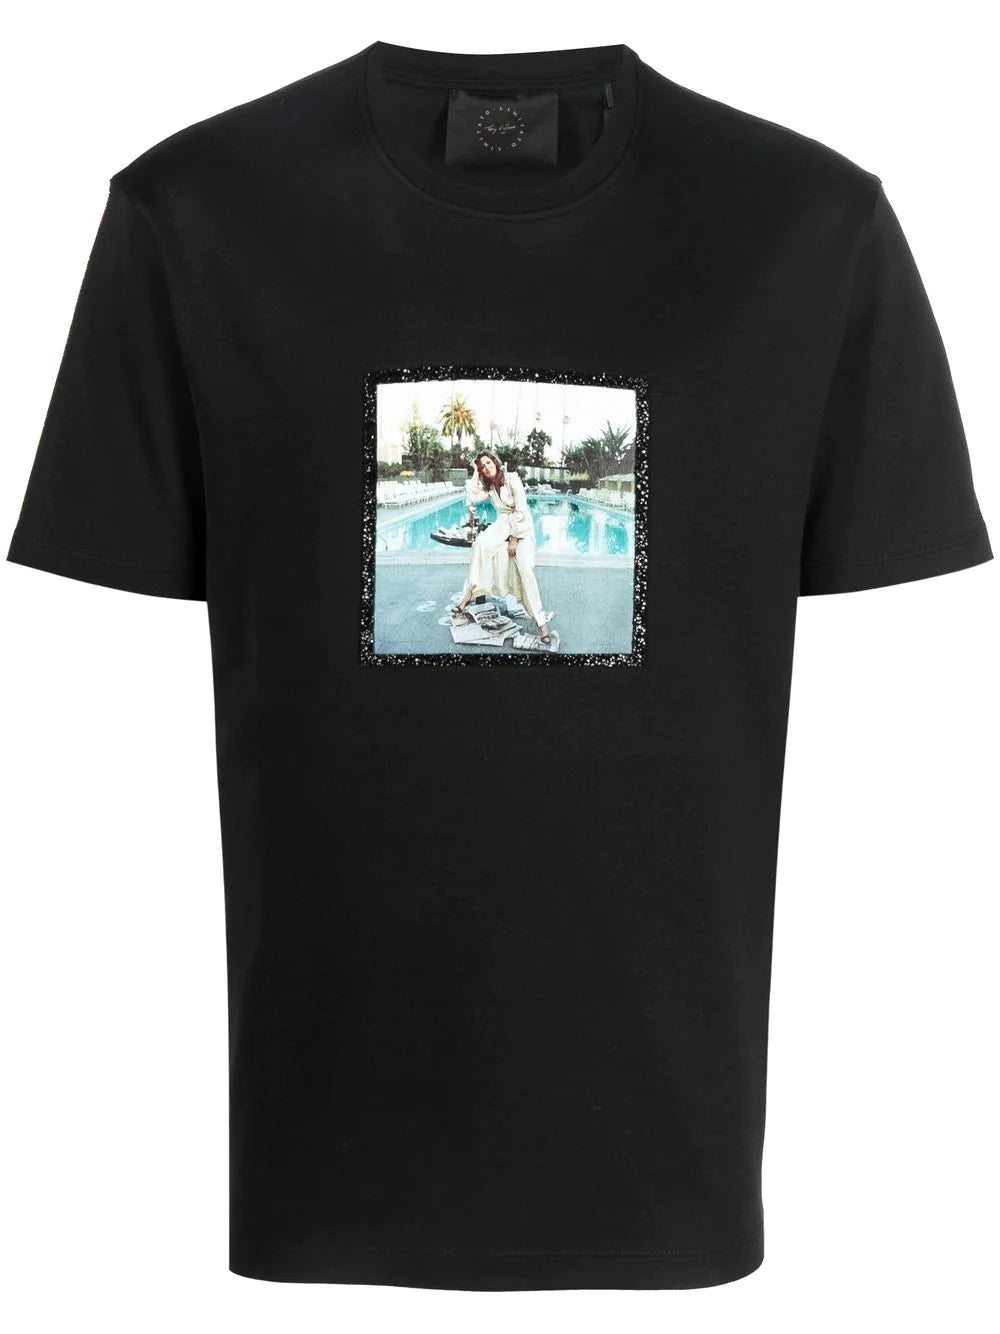 Camiseta piscina